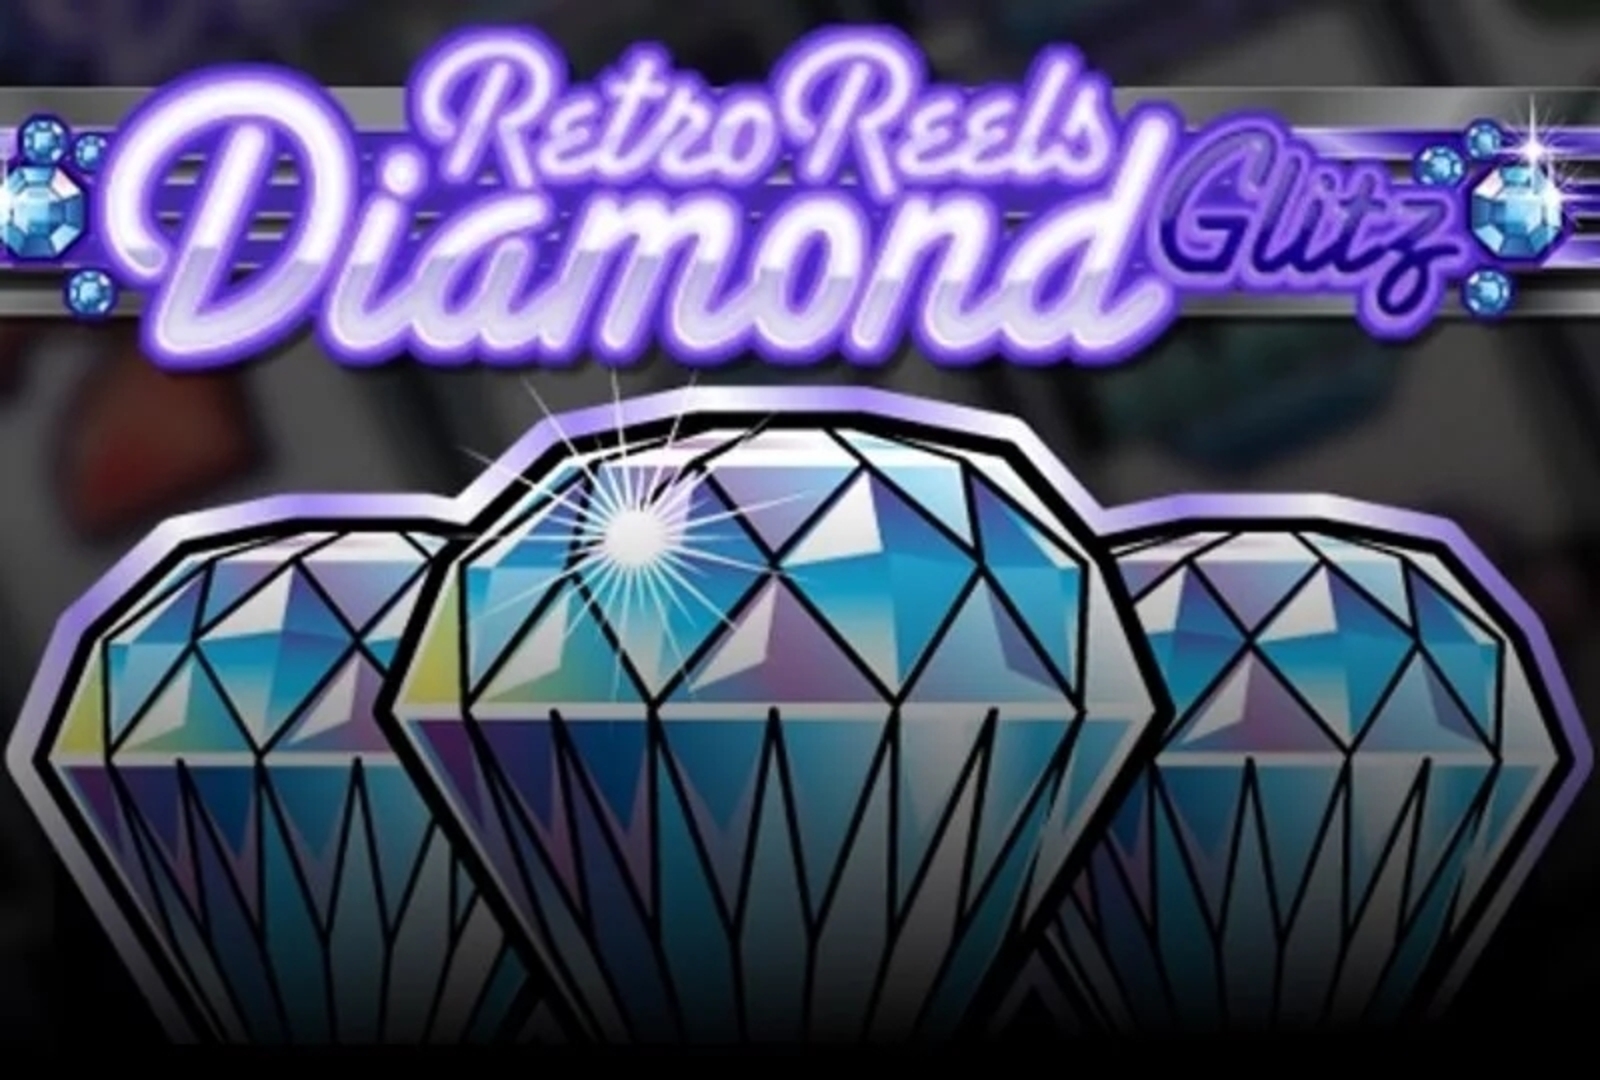 Retro Reels: Diamond Glitz demo